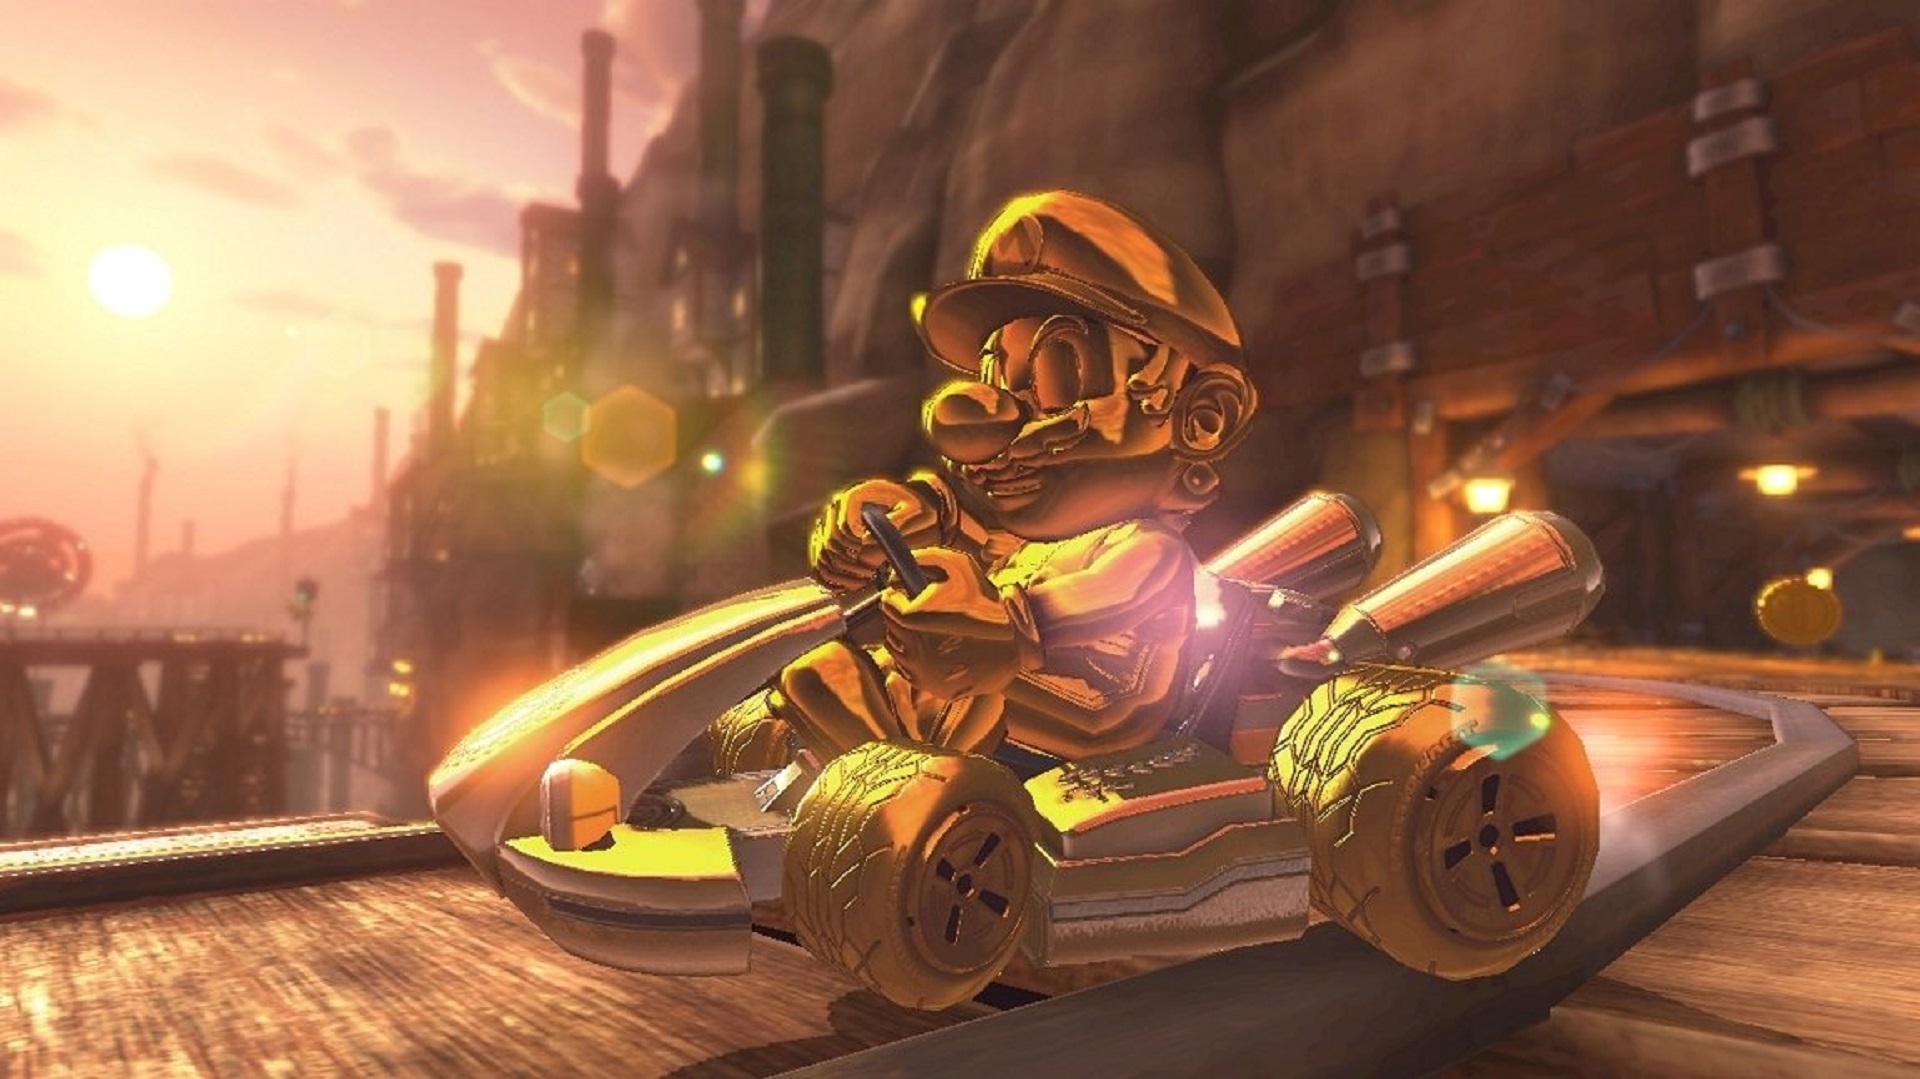 Gold Mario, singurul personaj redat dintre Mario Kart 8 Deluxe Deblockables